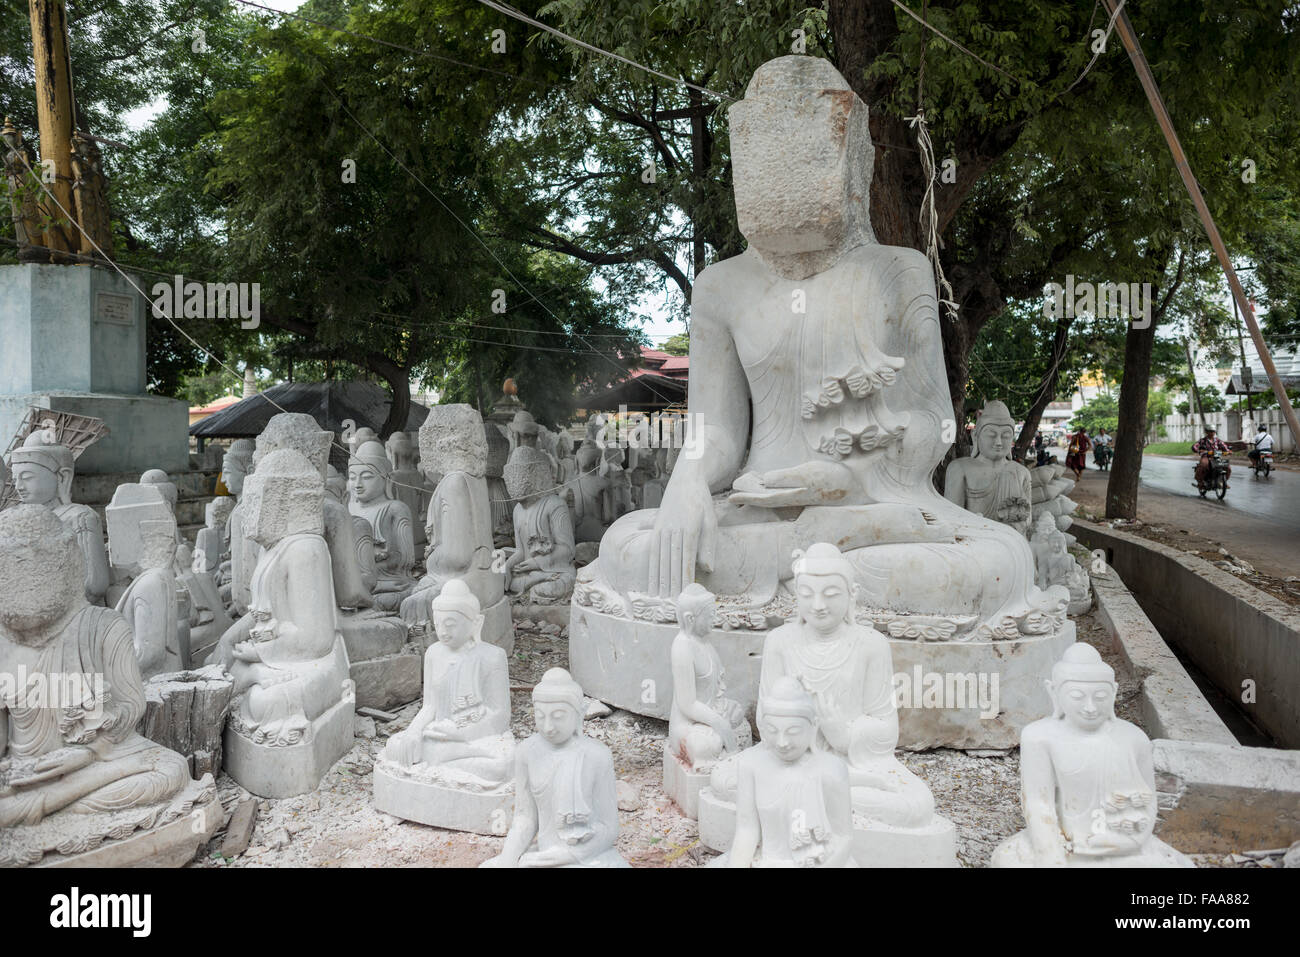 MANDALAY, Myanmar - lokale Handwerker der staubigen und Knochenarbeit der Carving Statuen des Buddha verpflichten sich aus Marmor. Mit dem Buddhismus, die vorherrschende Religion in Myanmar gibt es eine starke Nachfrage für die Statuen, mit Kunden in der Lage, aus einer Vielzahl von Posen, Größen und Stile zu wählen. Die Handwerker sind auf einer Straße in der Nähe von Mandalay Chanmyathazi in der Nähe der Mahamuni Pagode geclustert. Stockfoto